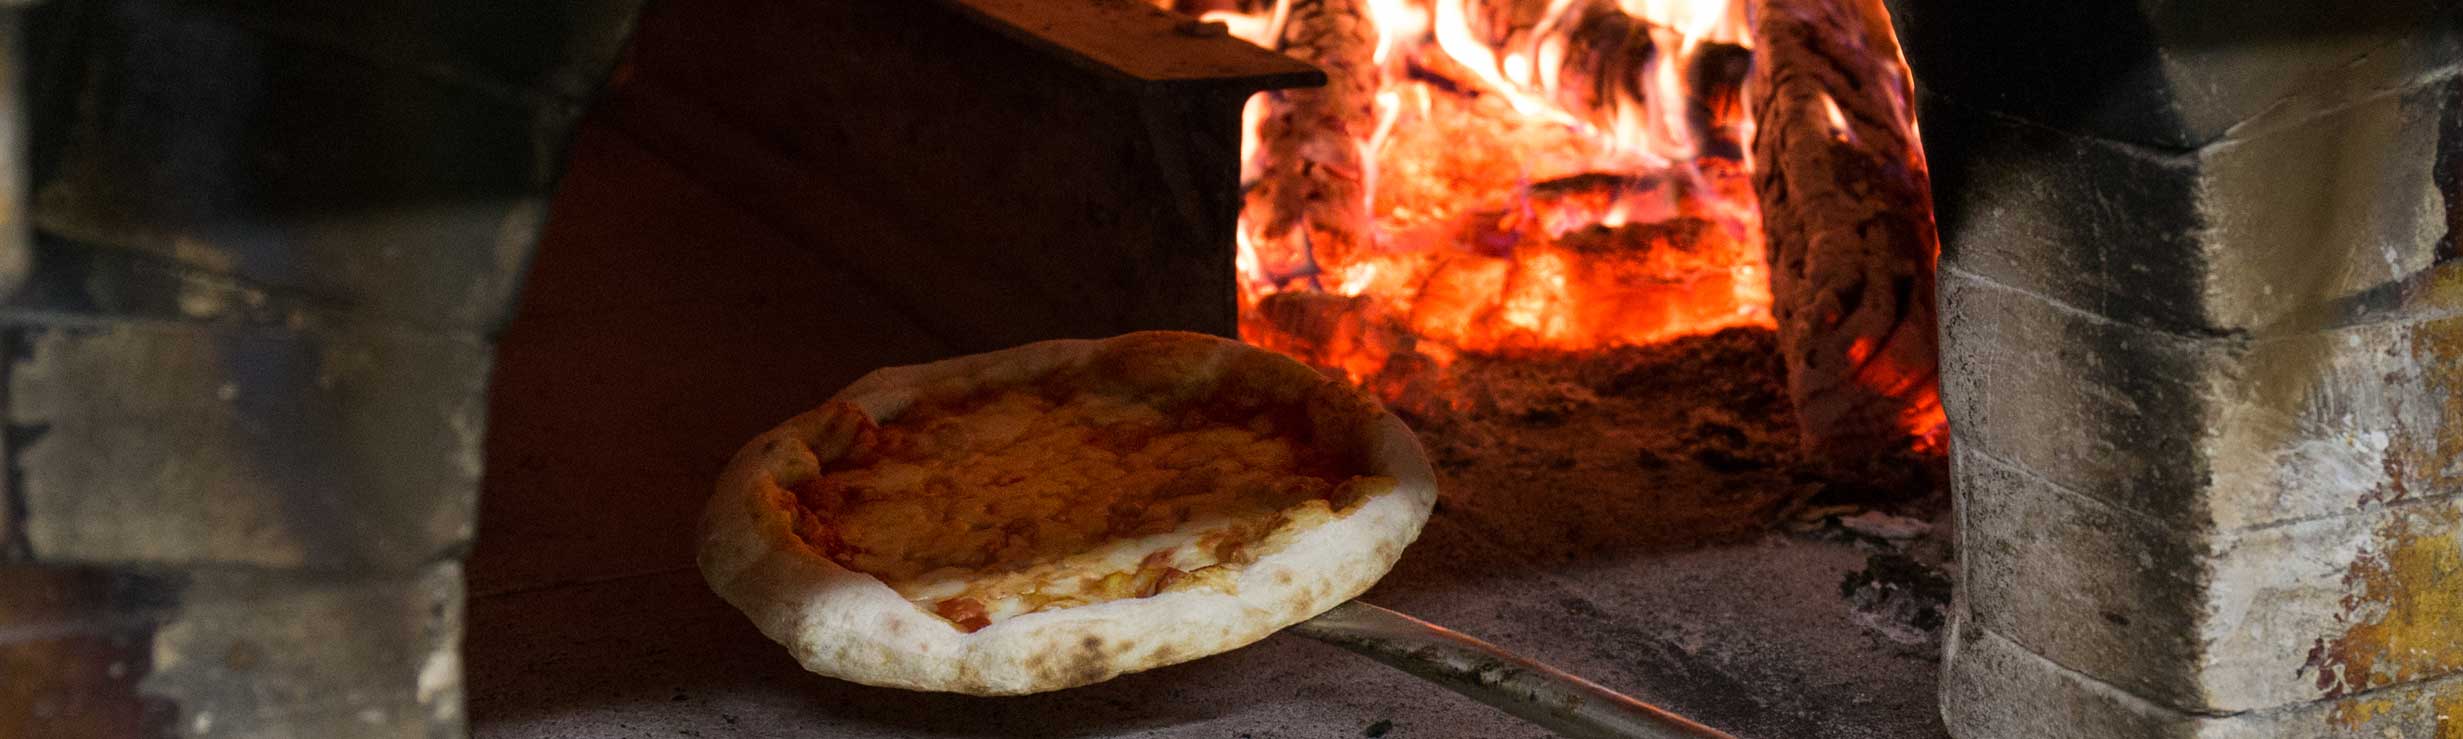 Pizzeria Capraro - Entrata nel forno a legna